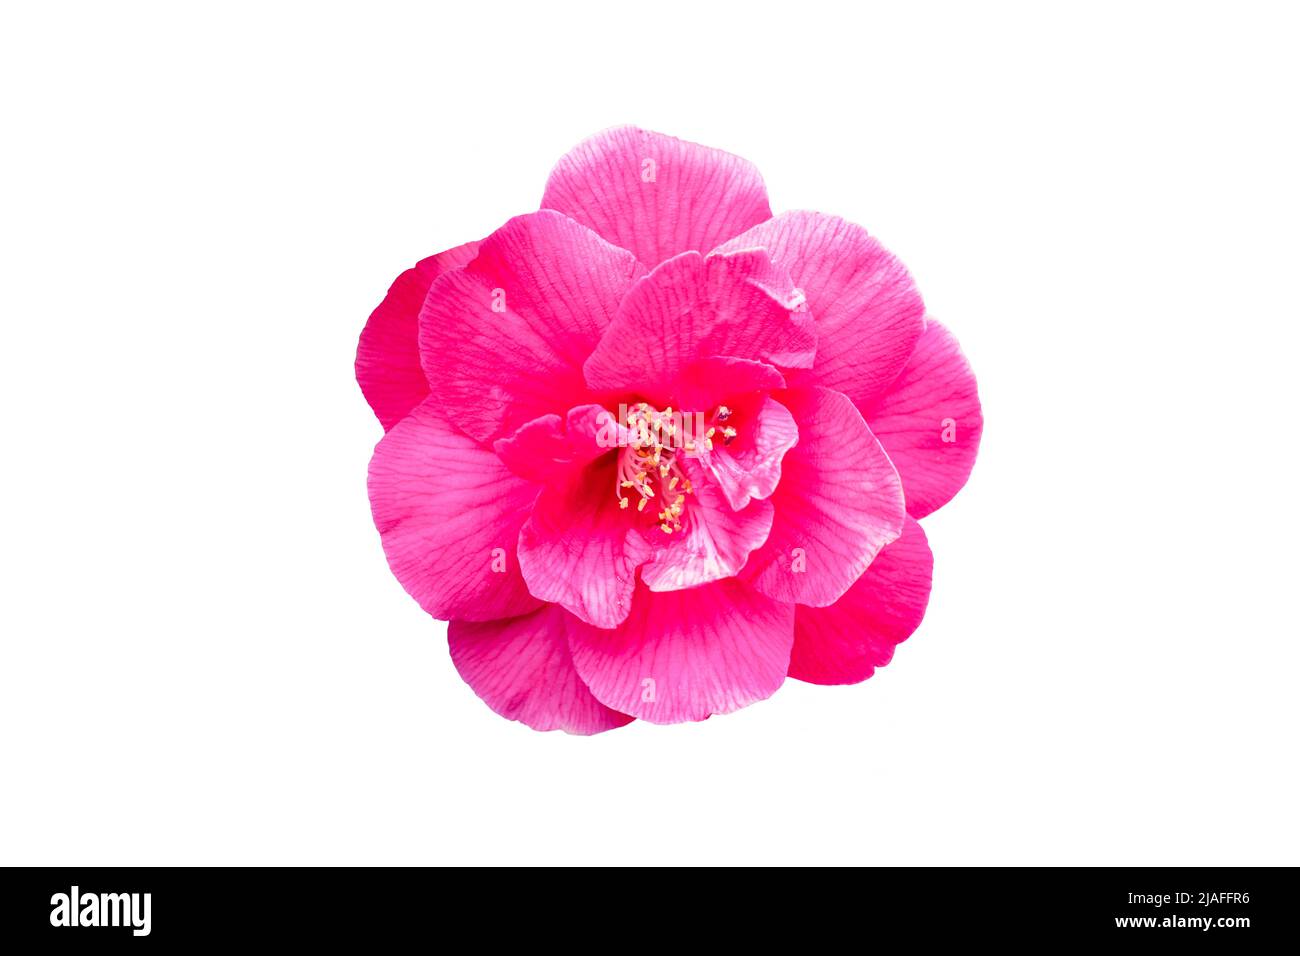 Fleur de camélia rose isolée sur fond blanc Banque D'Images